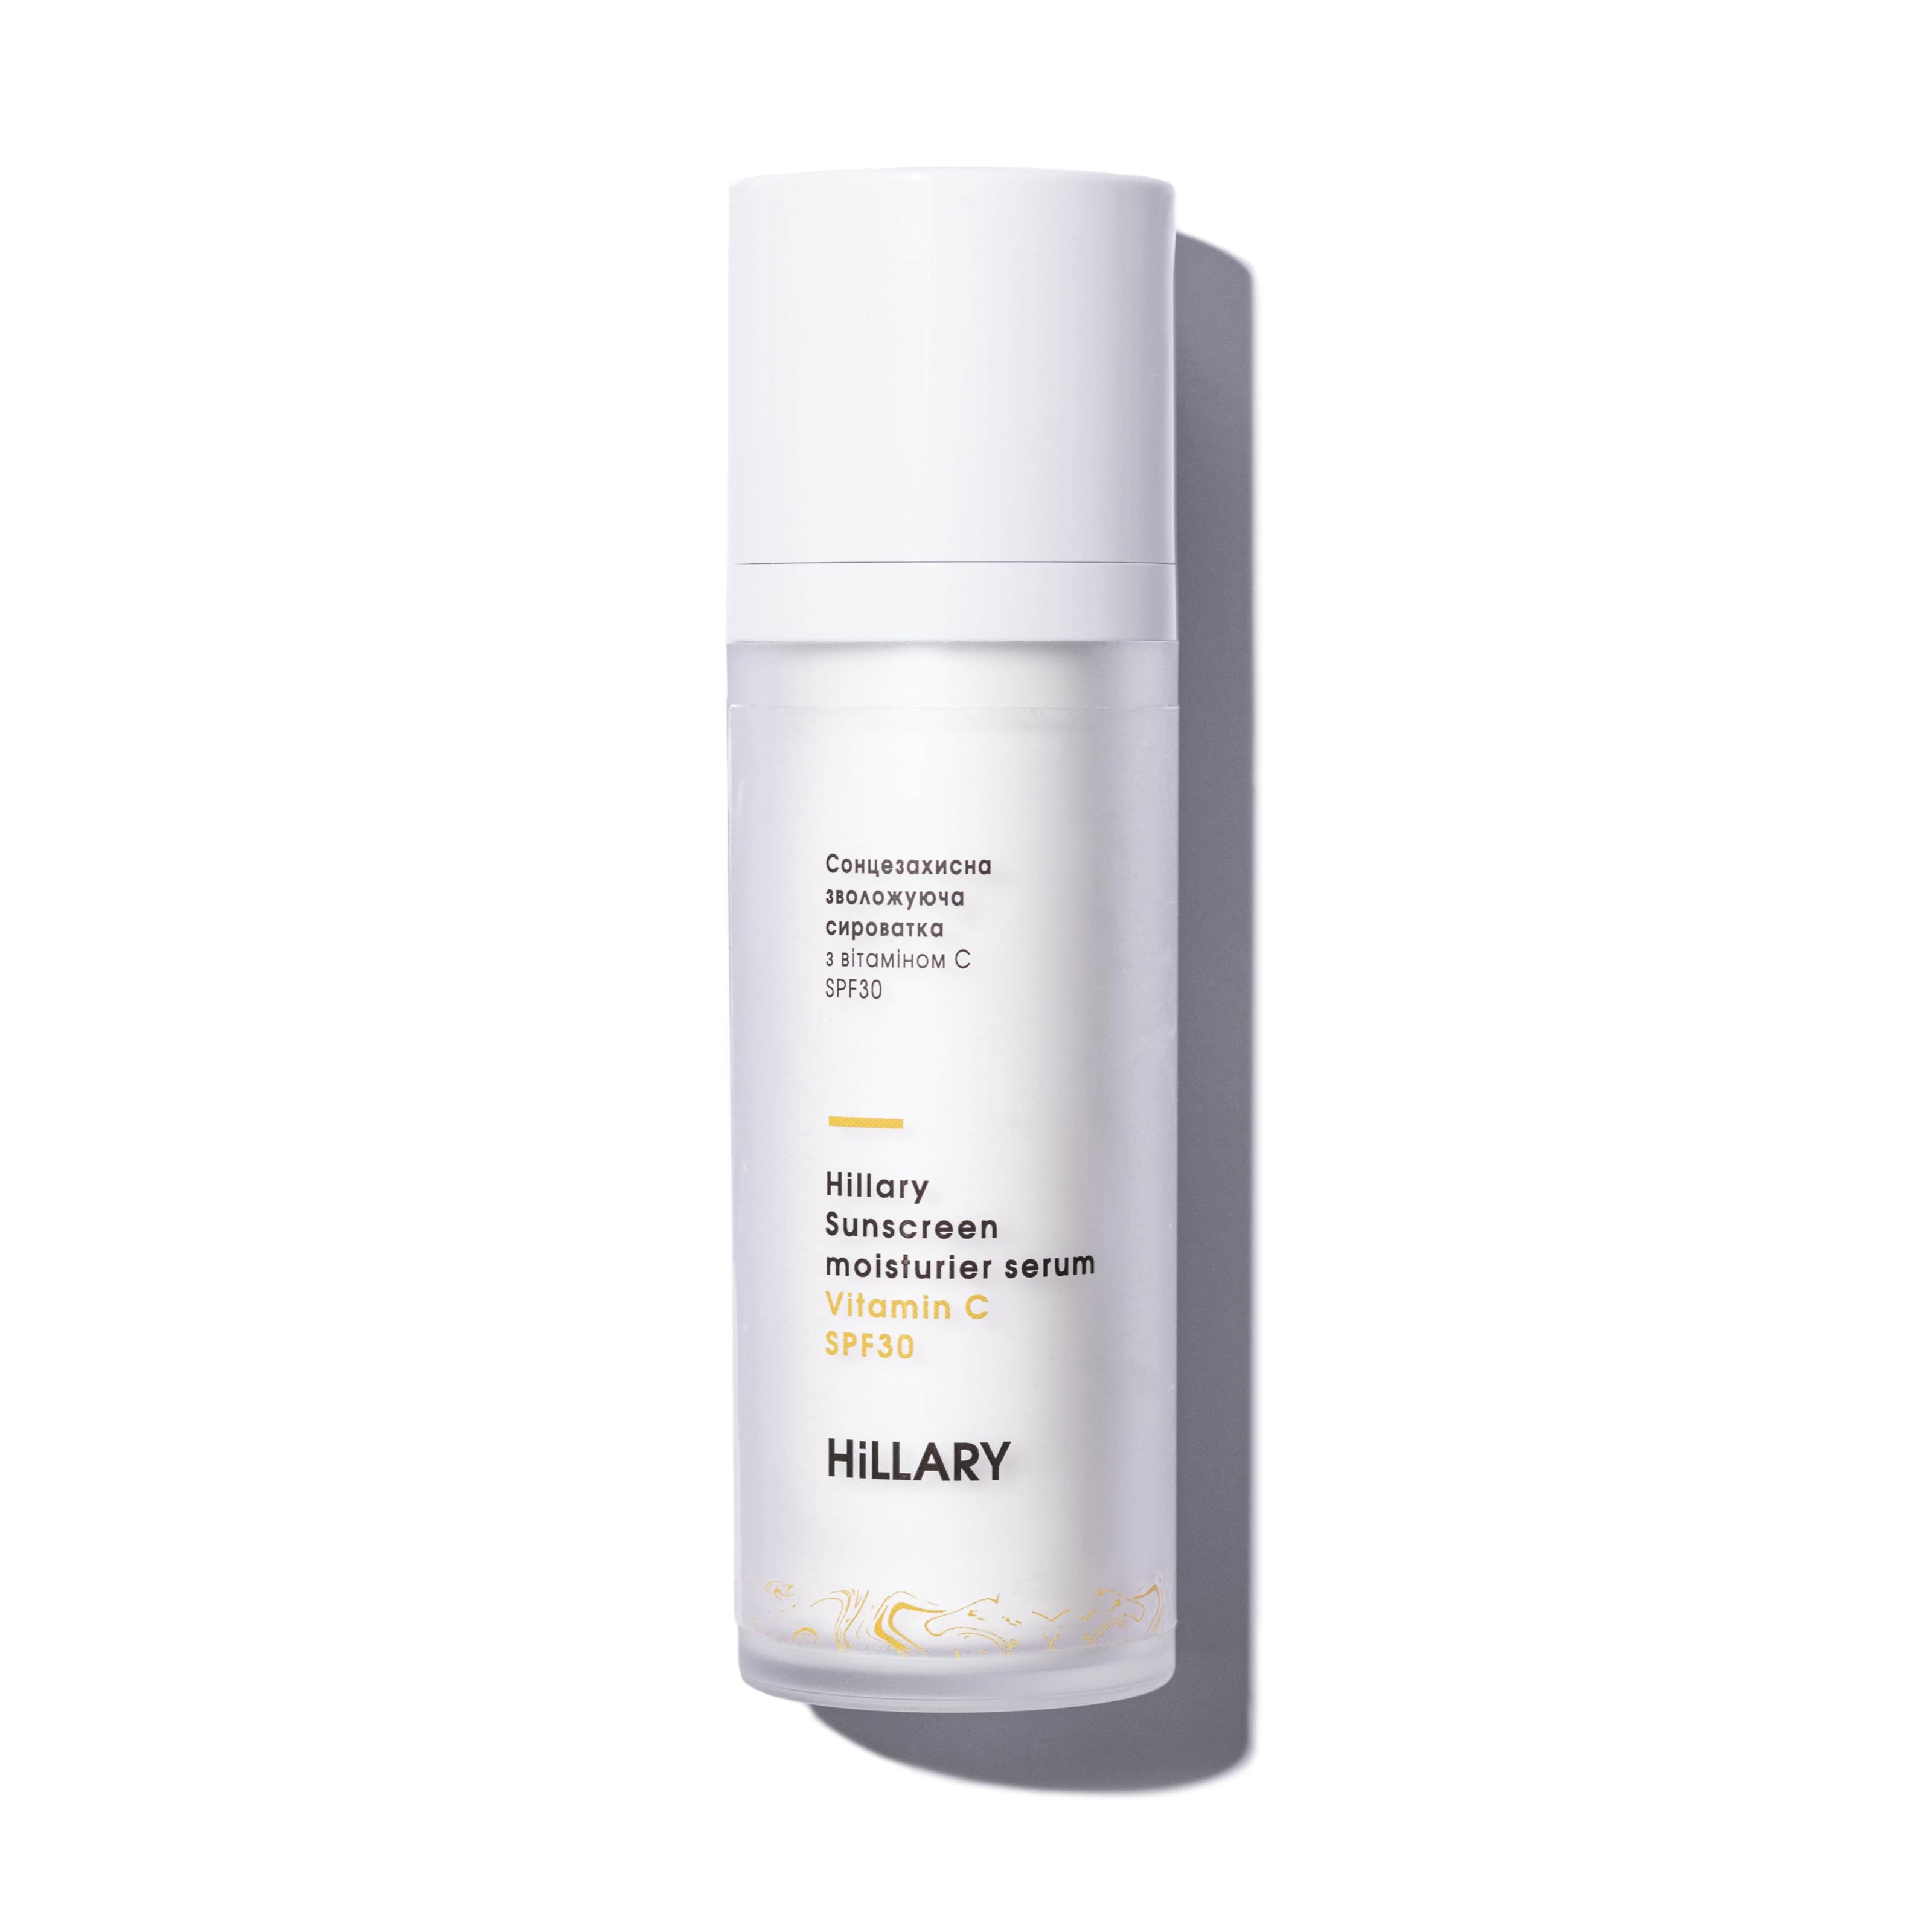 Сонцезахисна зволожуюча сироватка з вітаміном С SPF30 Hillary Sunscreen moisturier serum Vitamin C SPF30, 30 мл